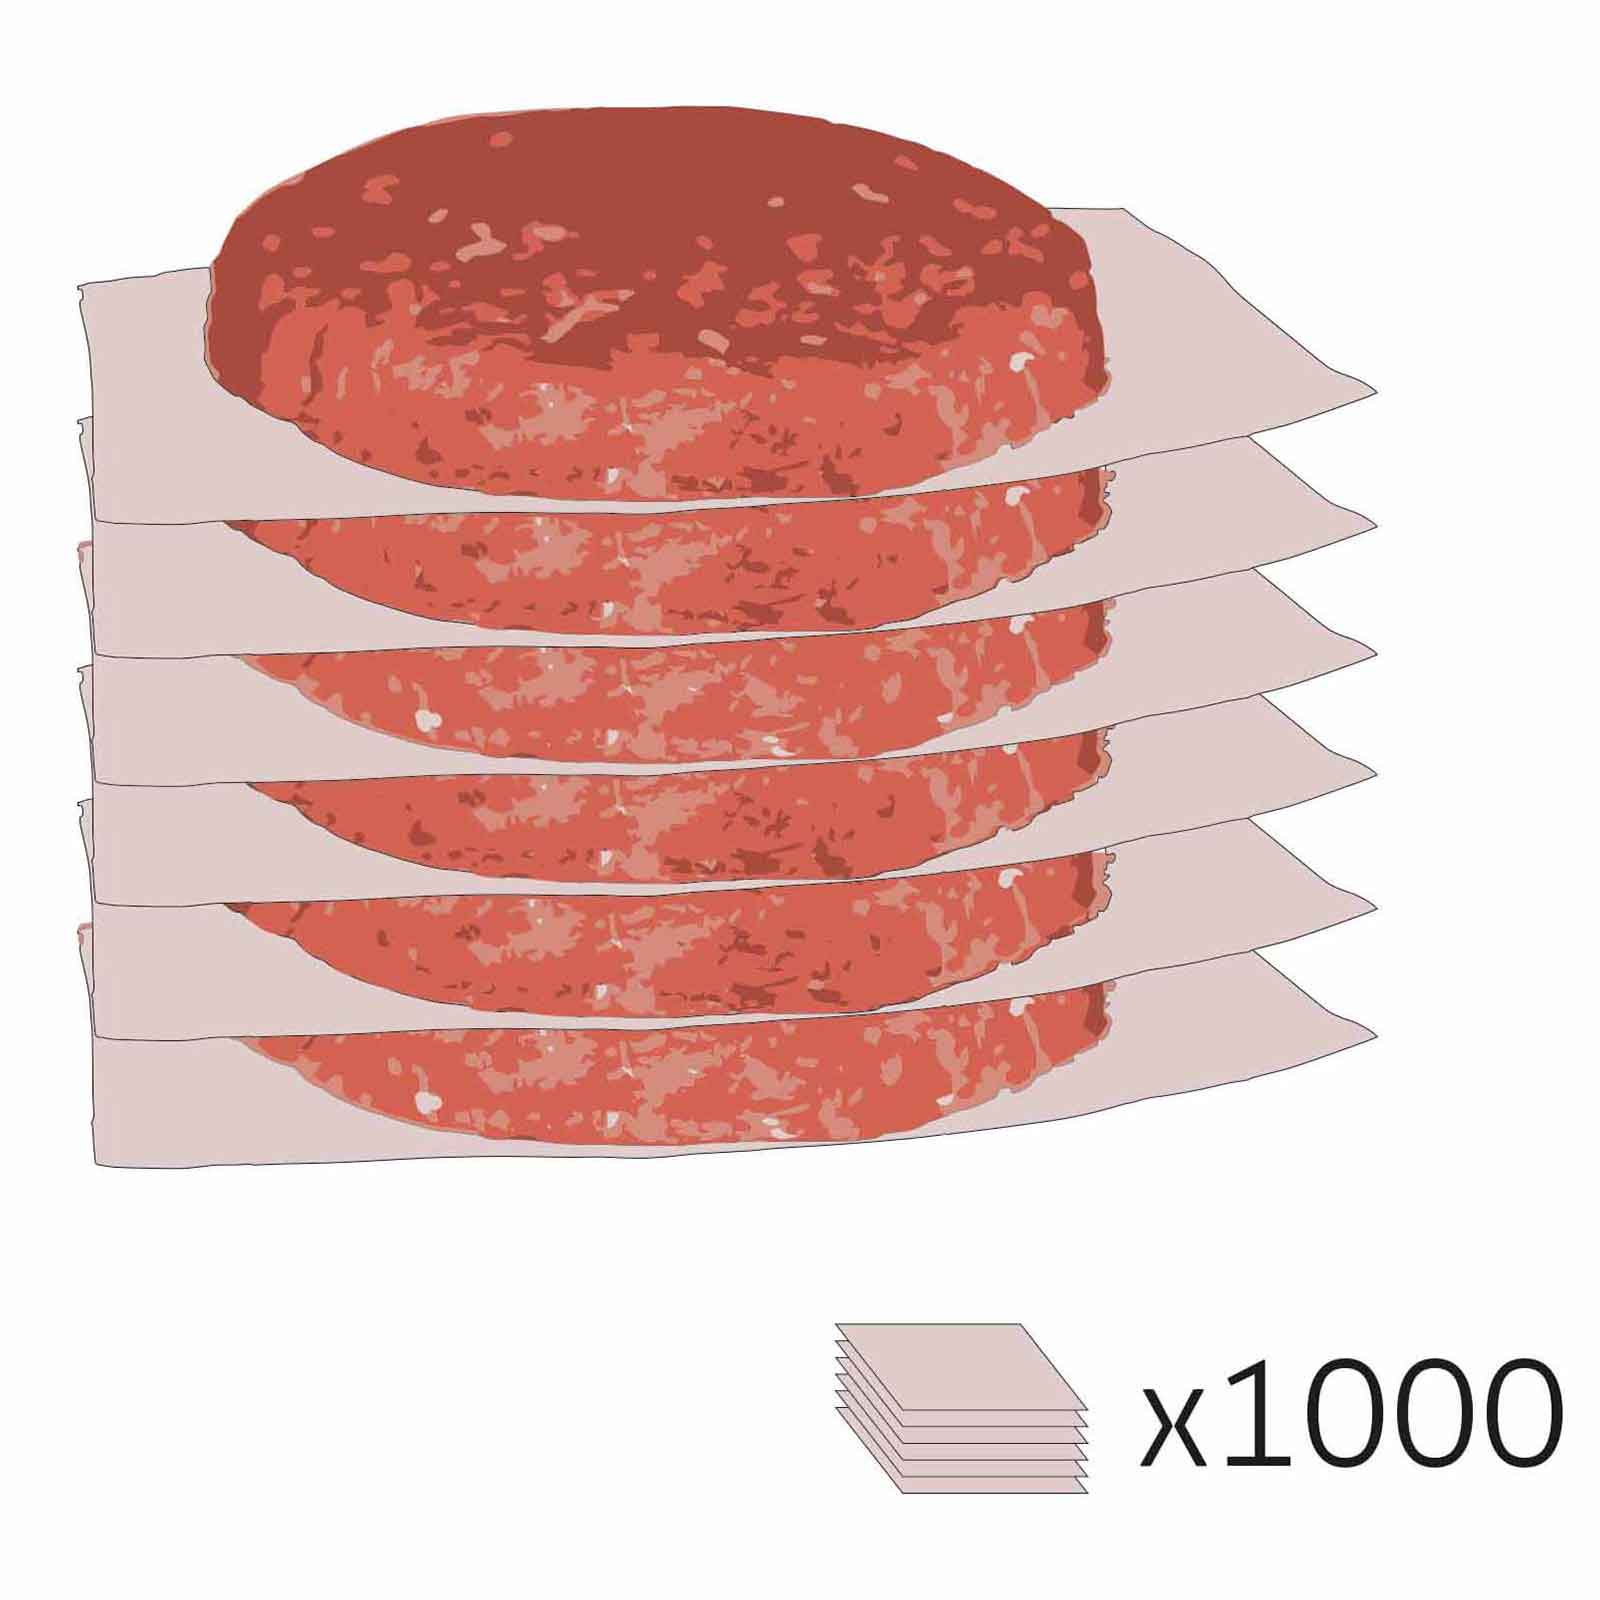 Feuillets Intercalaires de papier pour patie burger - 1000pcs